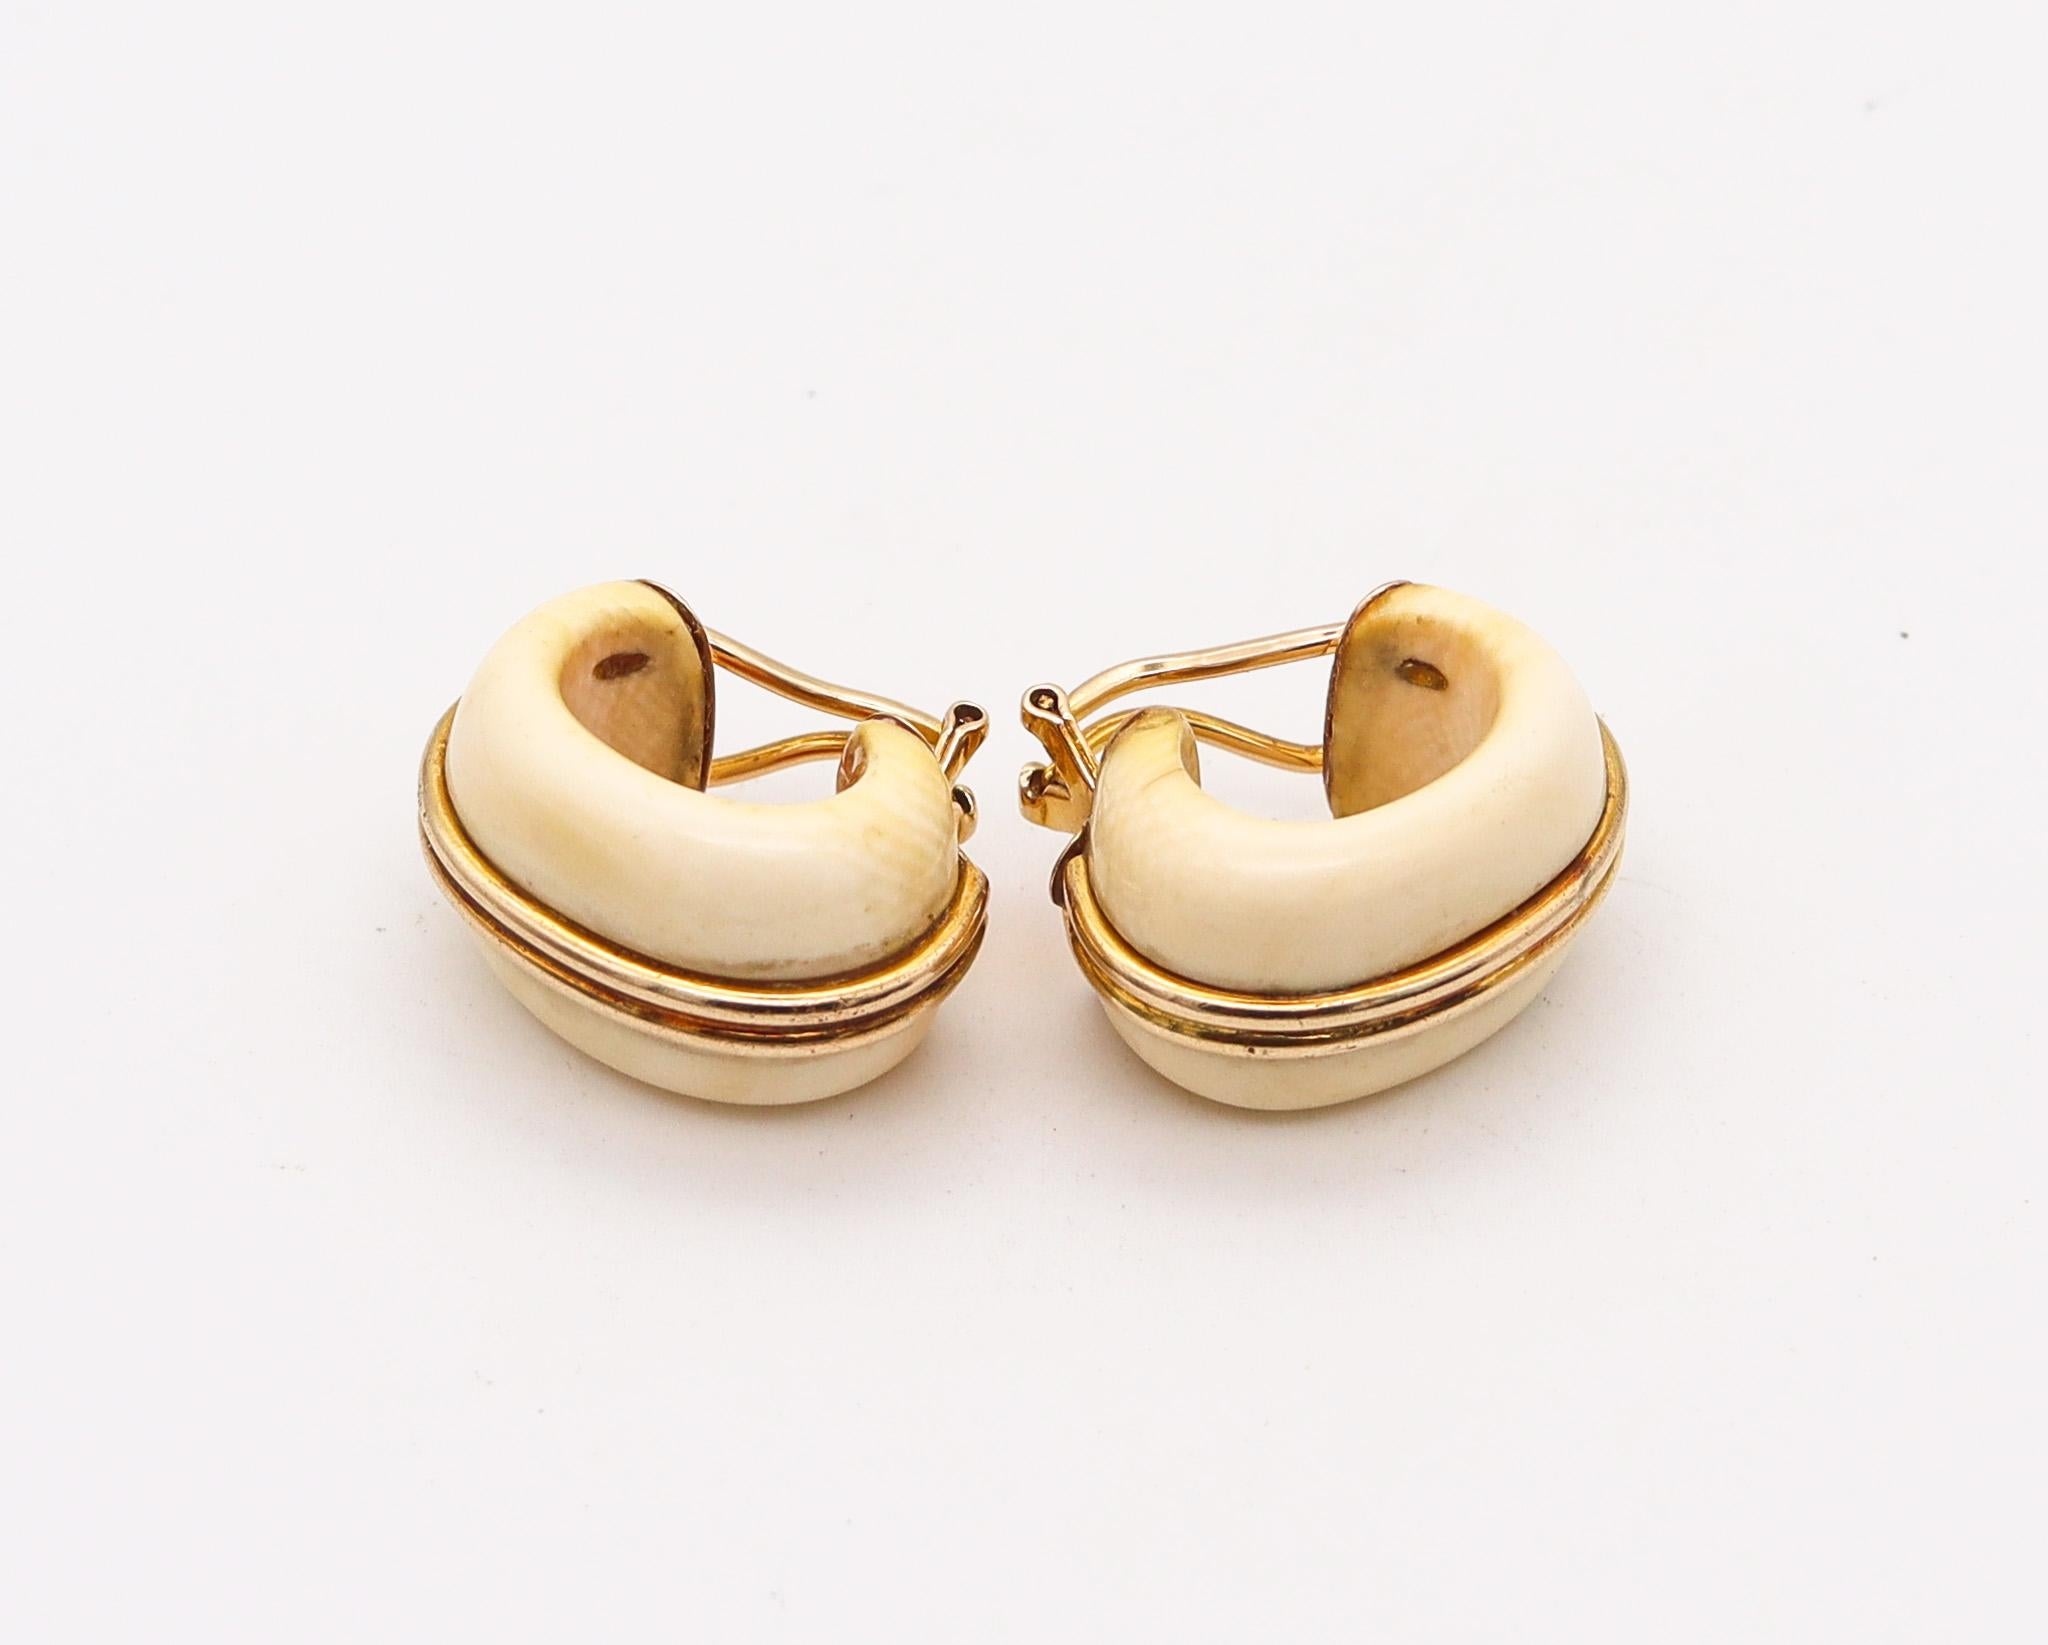 Boucles d'oreilles modernistes italiennes.

Paire de boucles d'oreilles modernistes vintage, créées en Italie dans les années 1970. Elles ont été réalisées en or jaune massif de 14 carats et montées avec des sculptures naturelles. Dotés d'un dos en